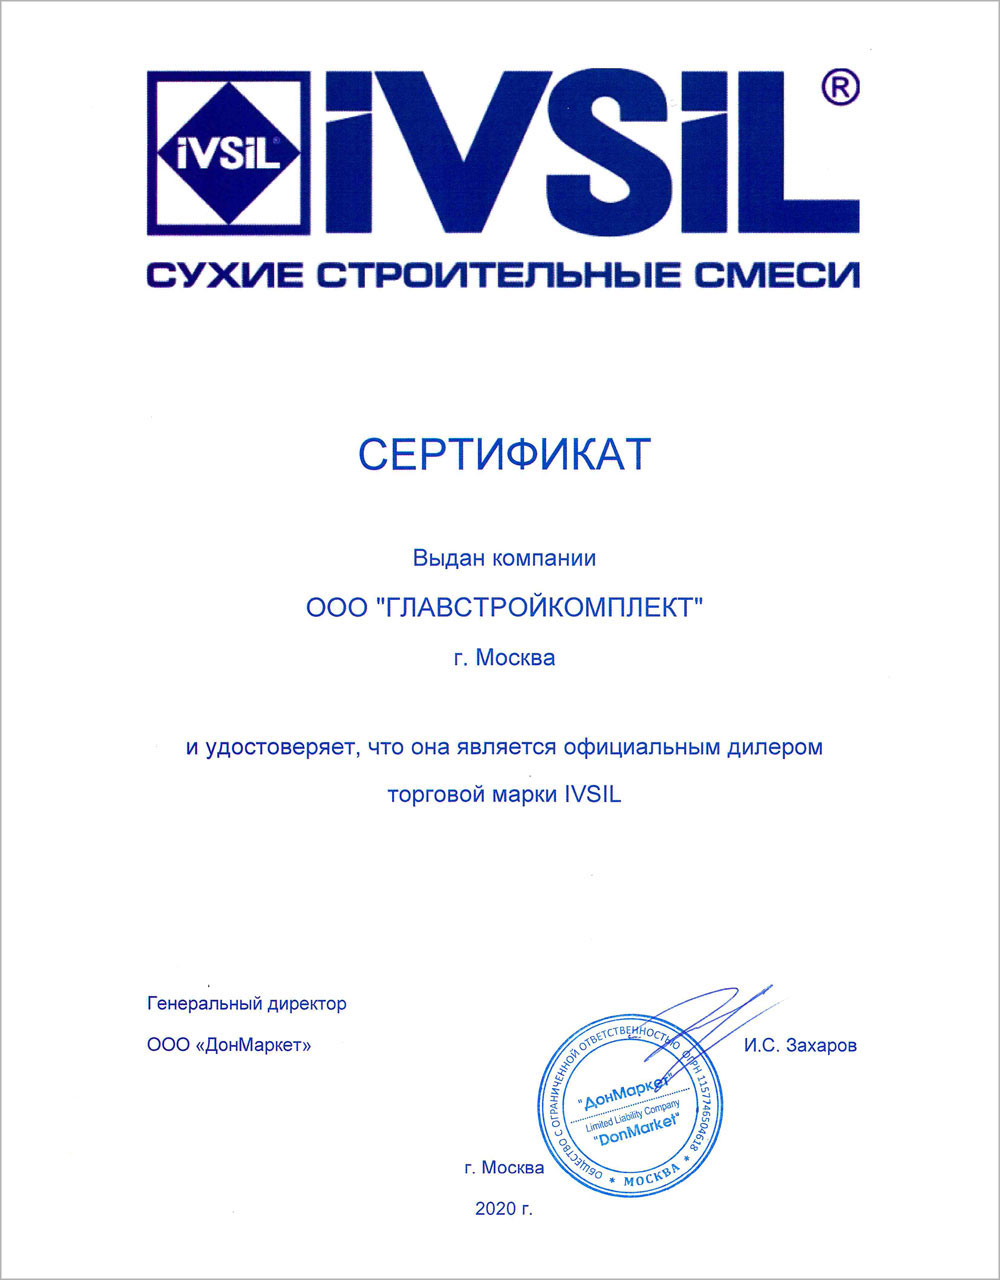 Сертификат официального дилера IVSIL